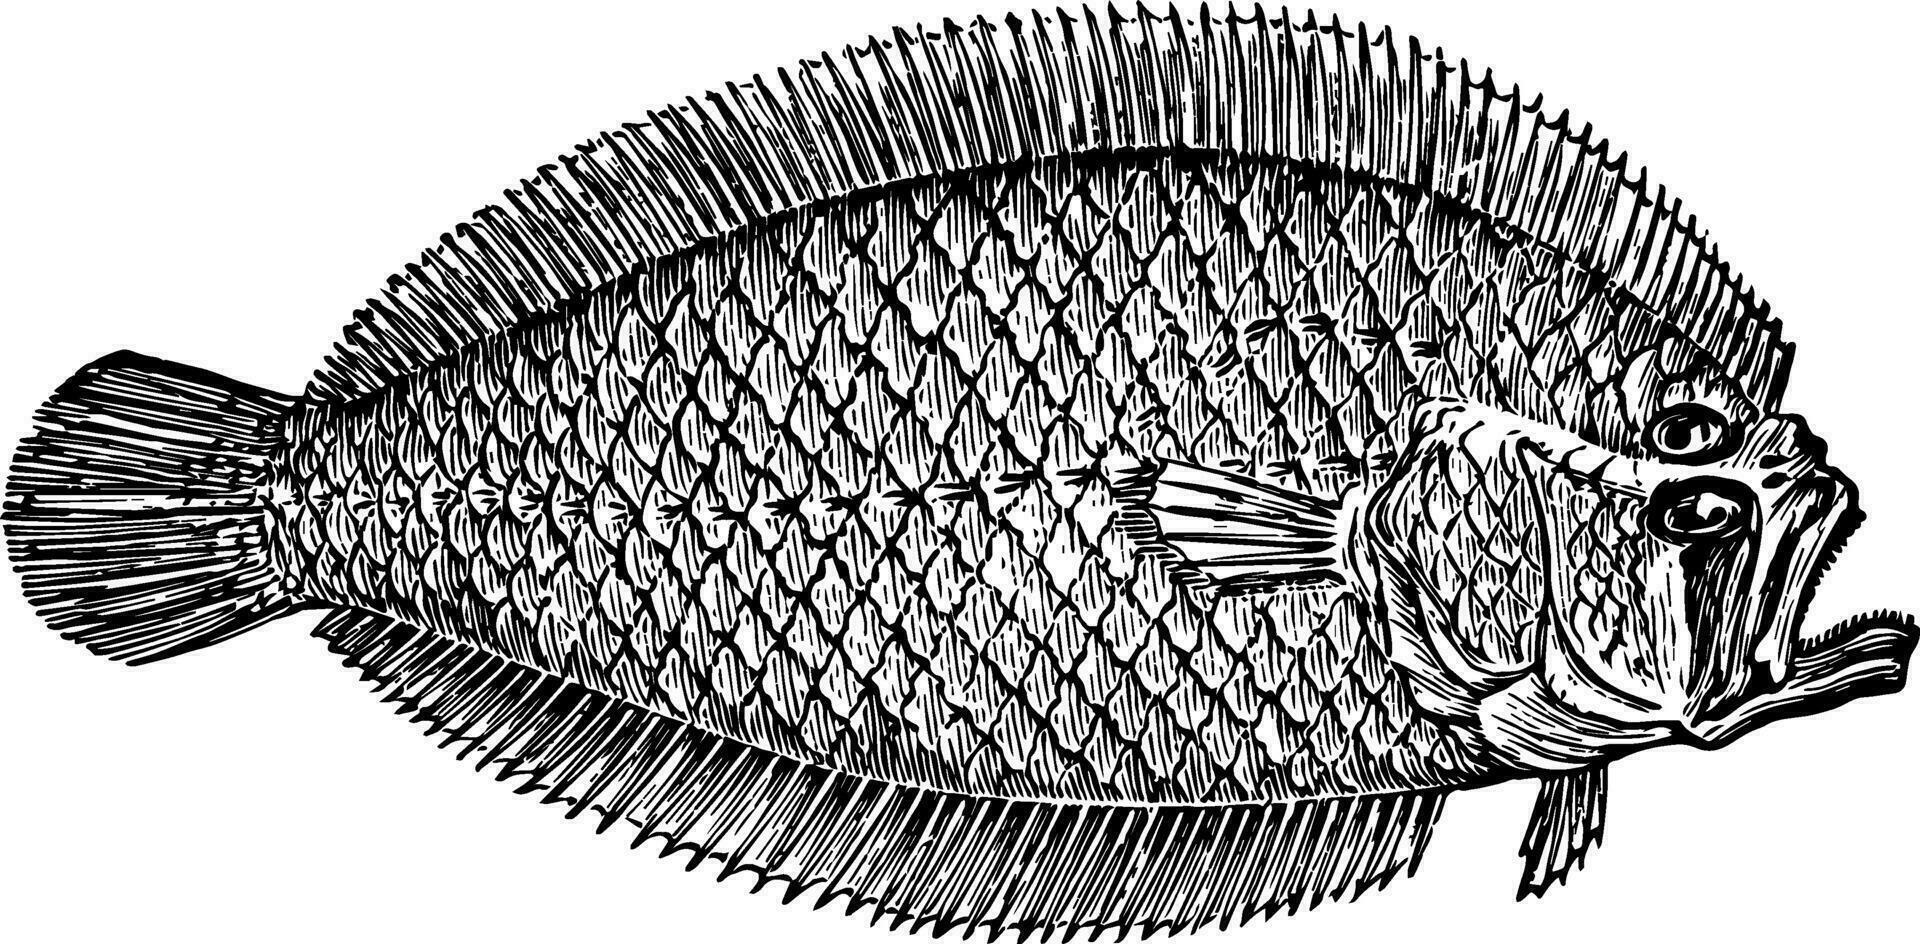 Lefteye Flounder vintage illustration. vector